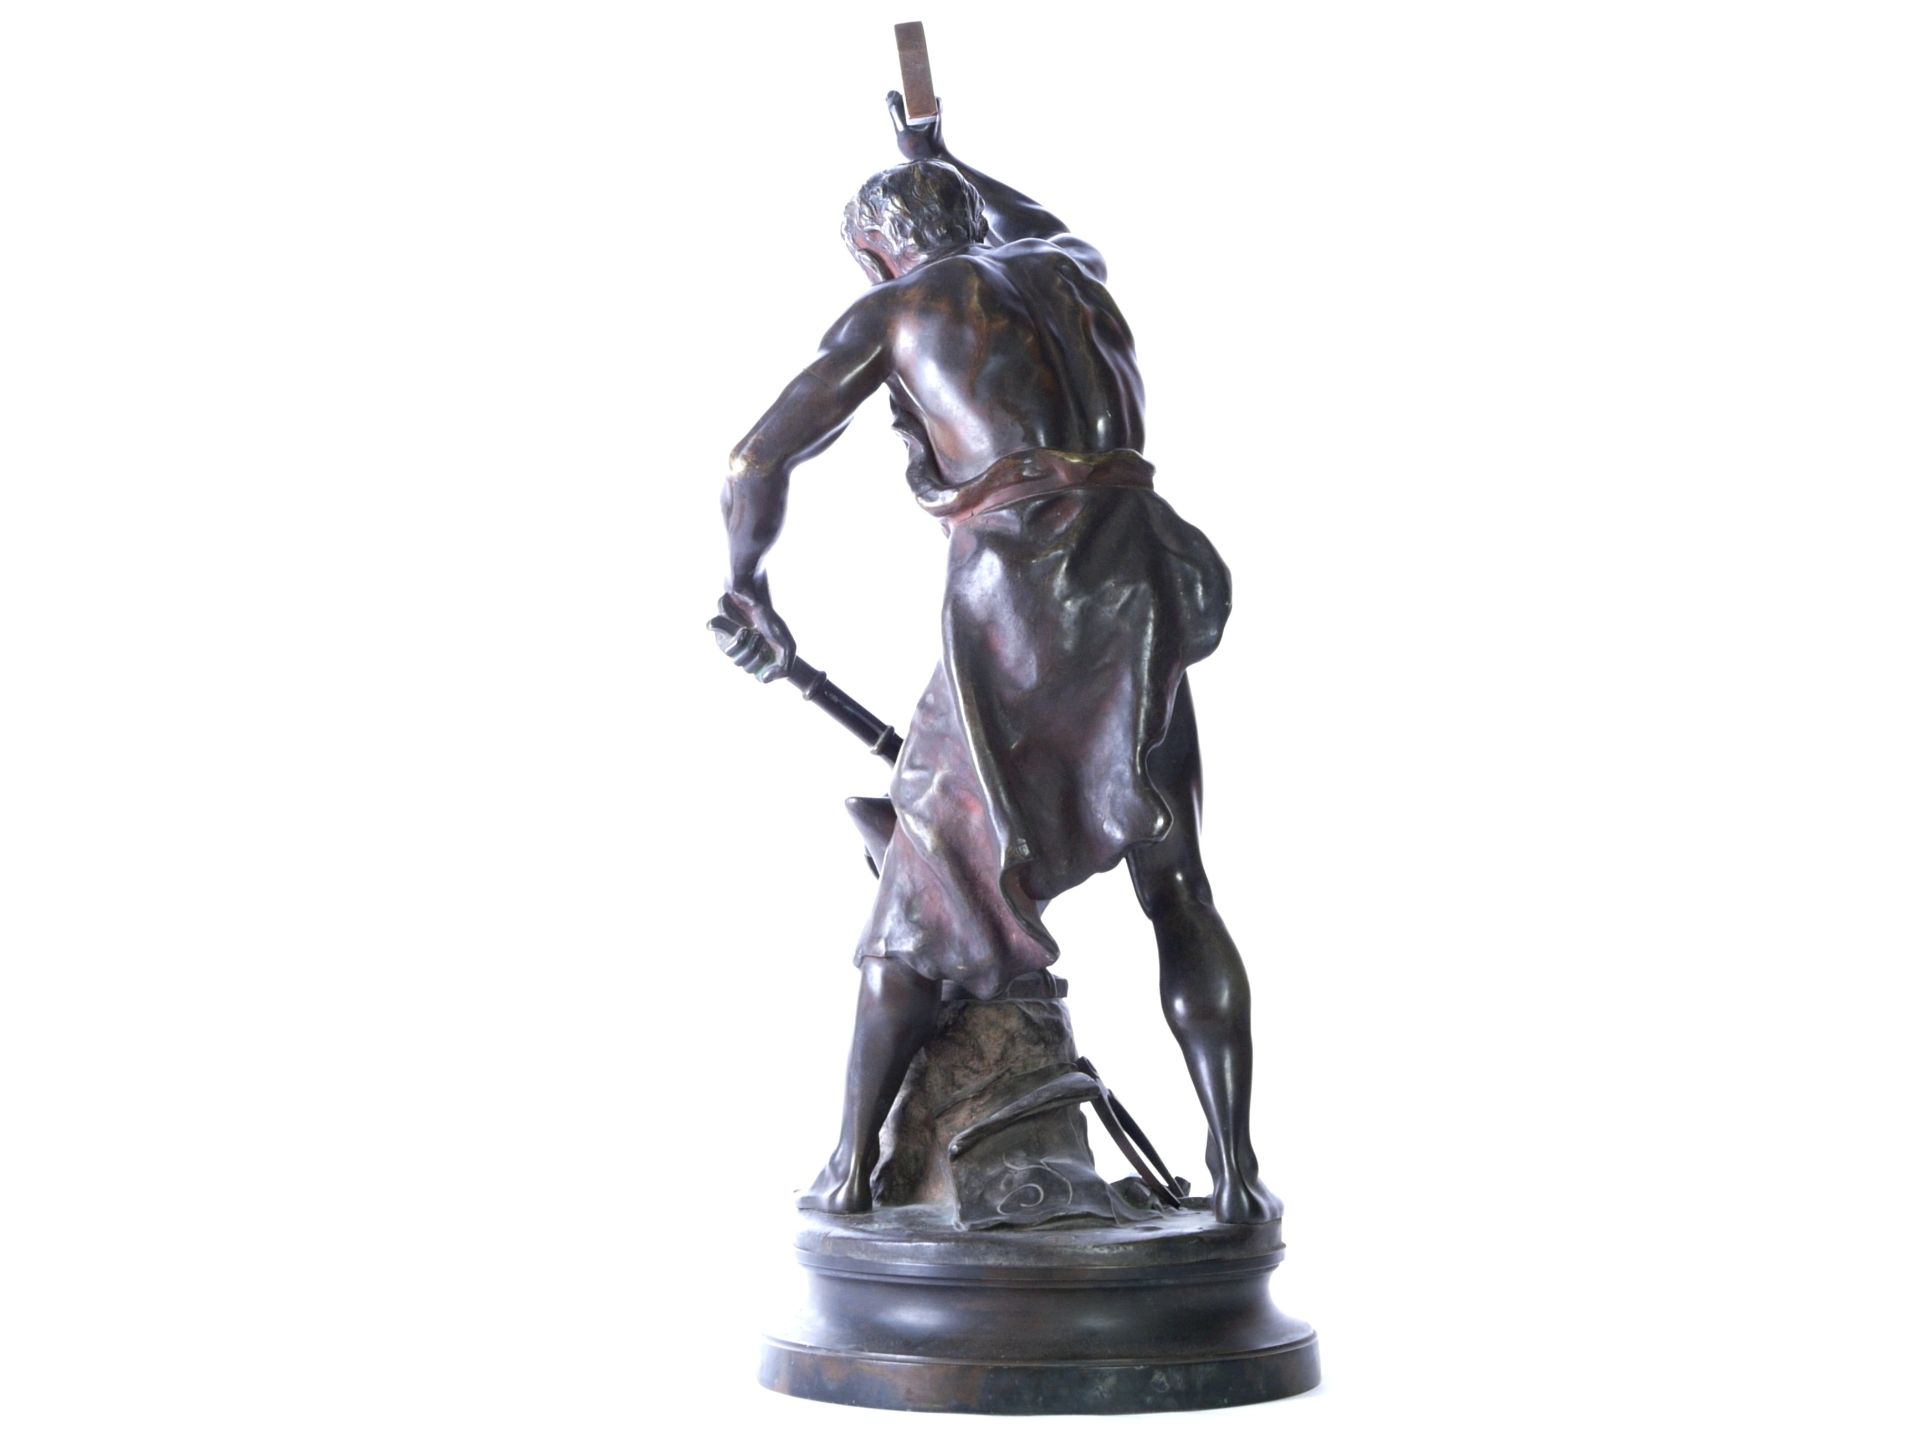 Gaudez, Adrien Etienne (1845-1902) - Große Bronze "Der Schmied" - Bild 6 aus 11